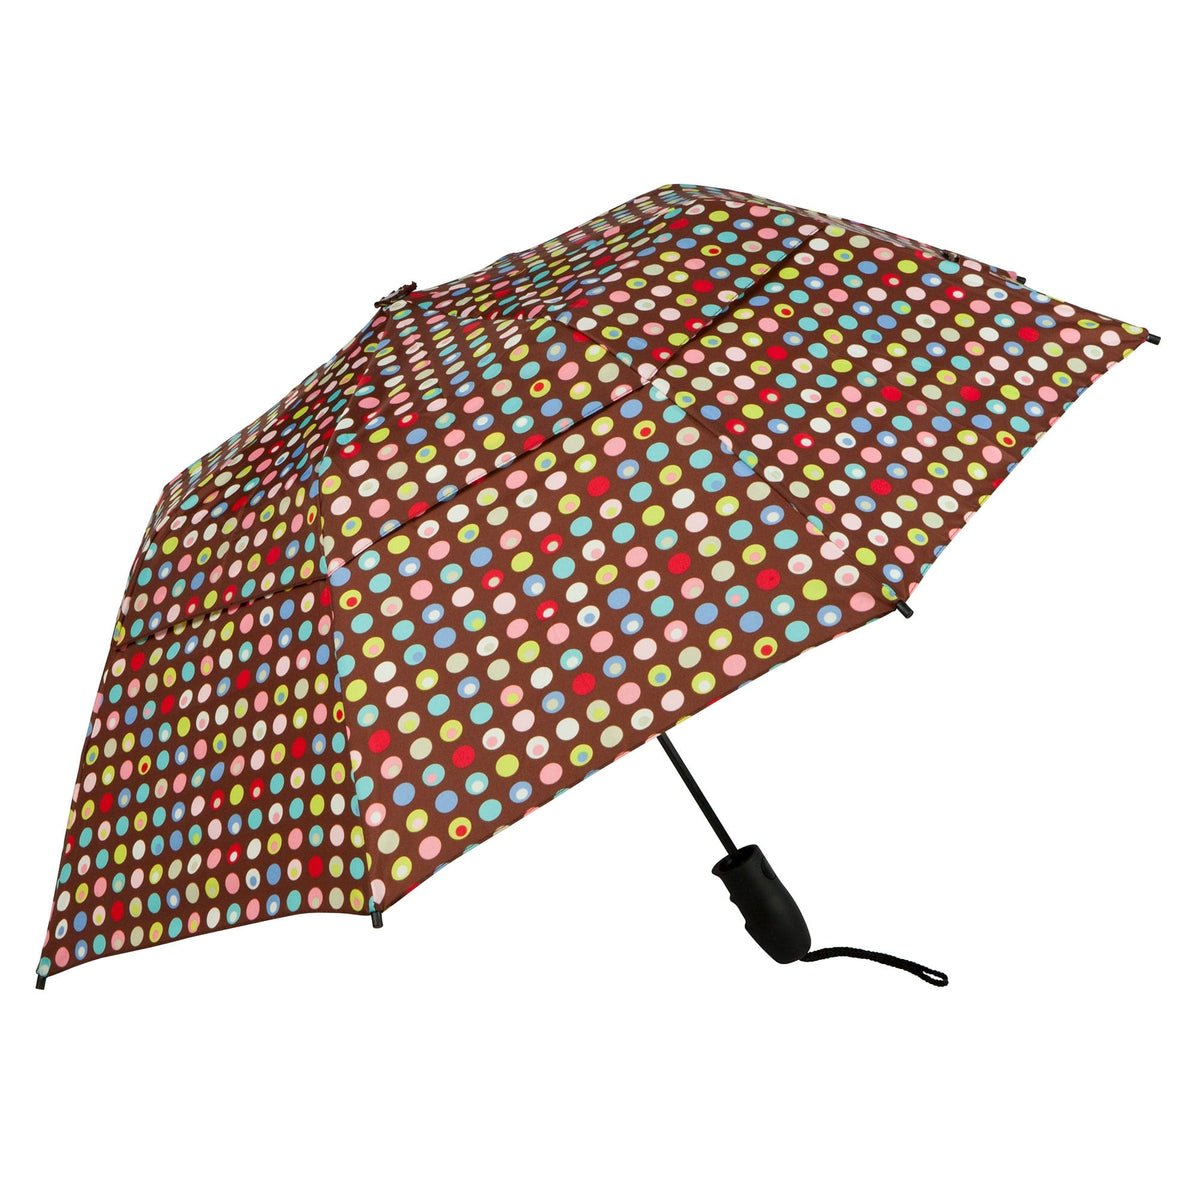 Haas-Jordan Urbanite 44" Umbrella